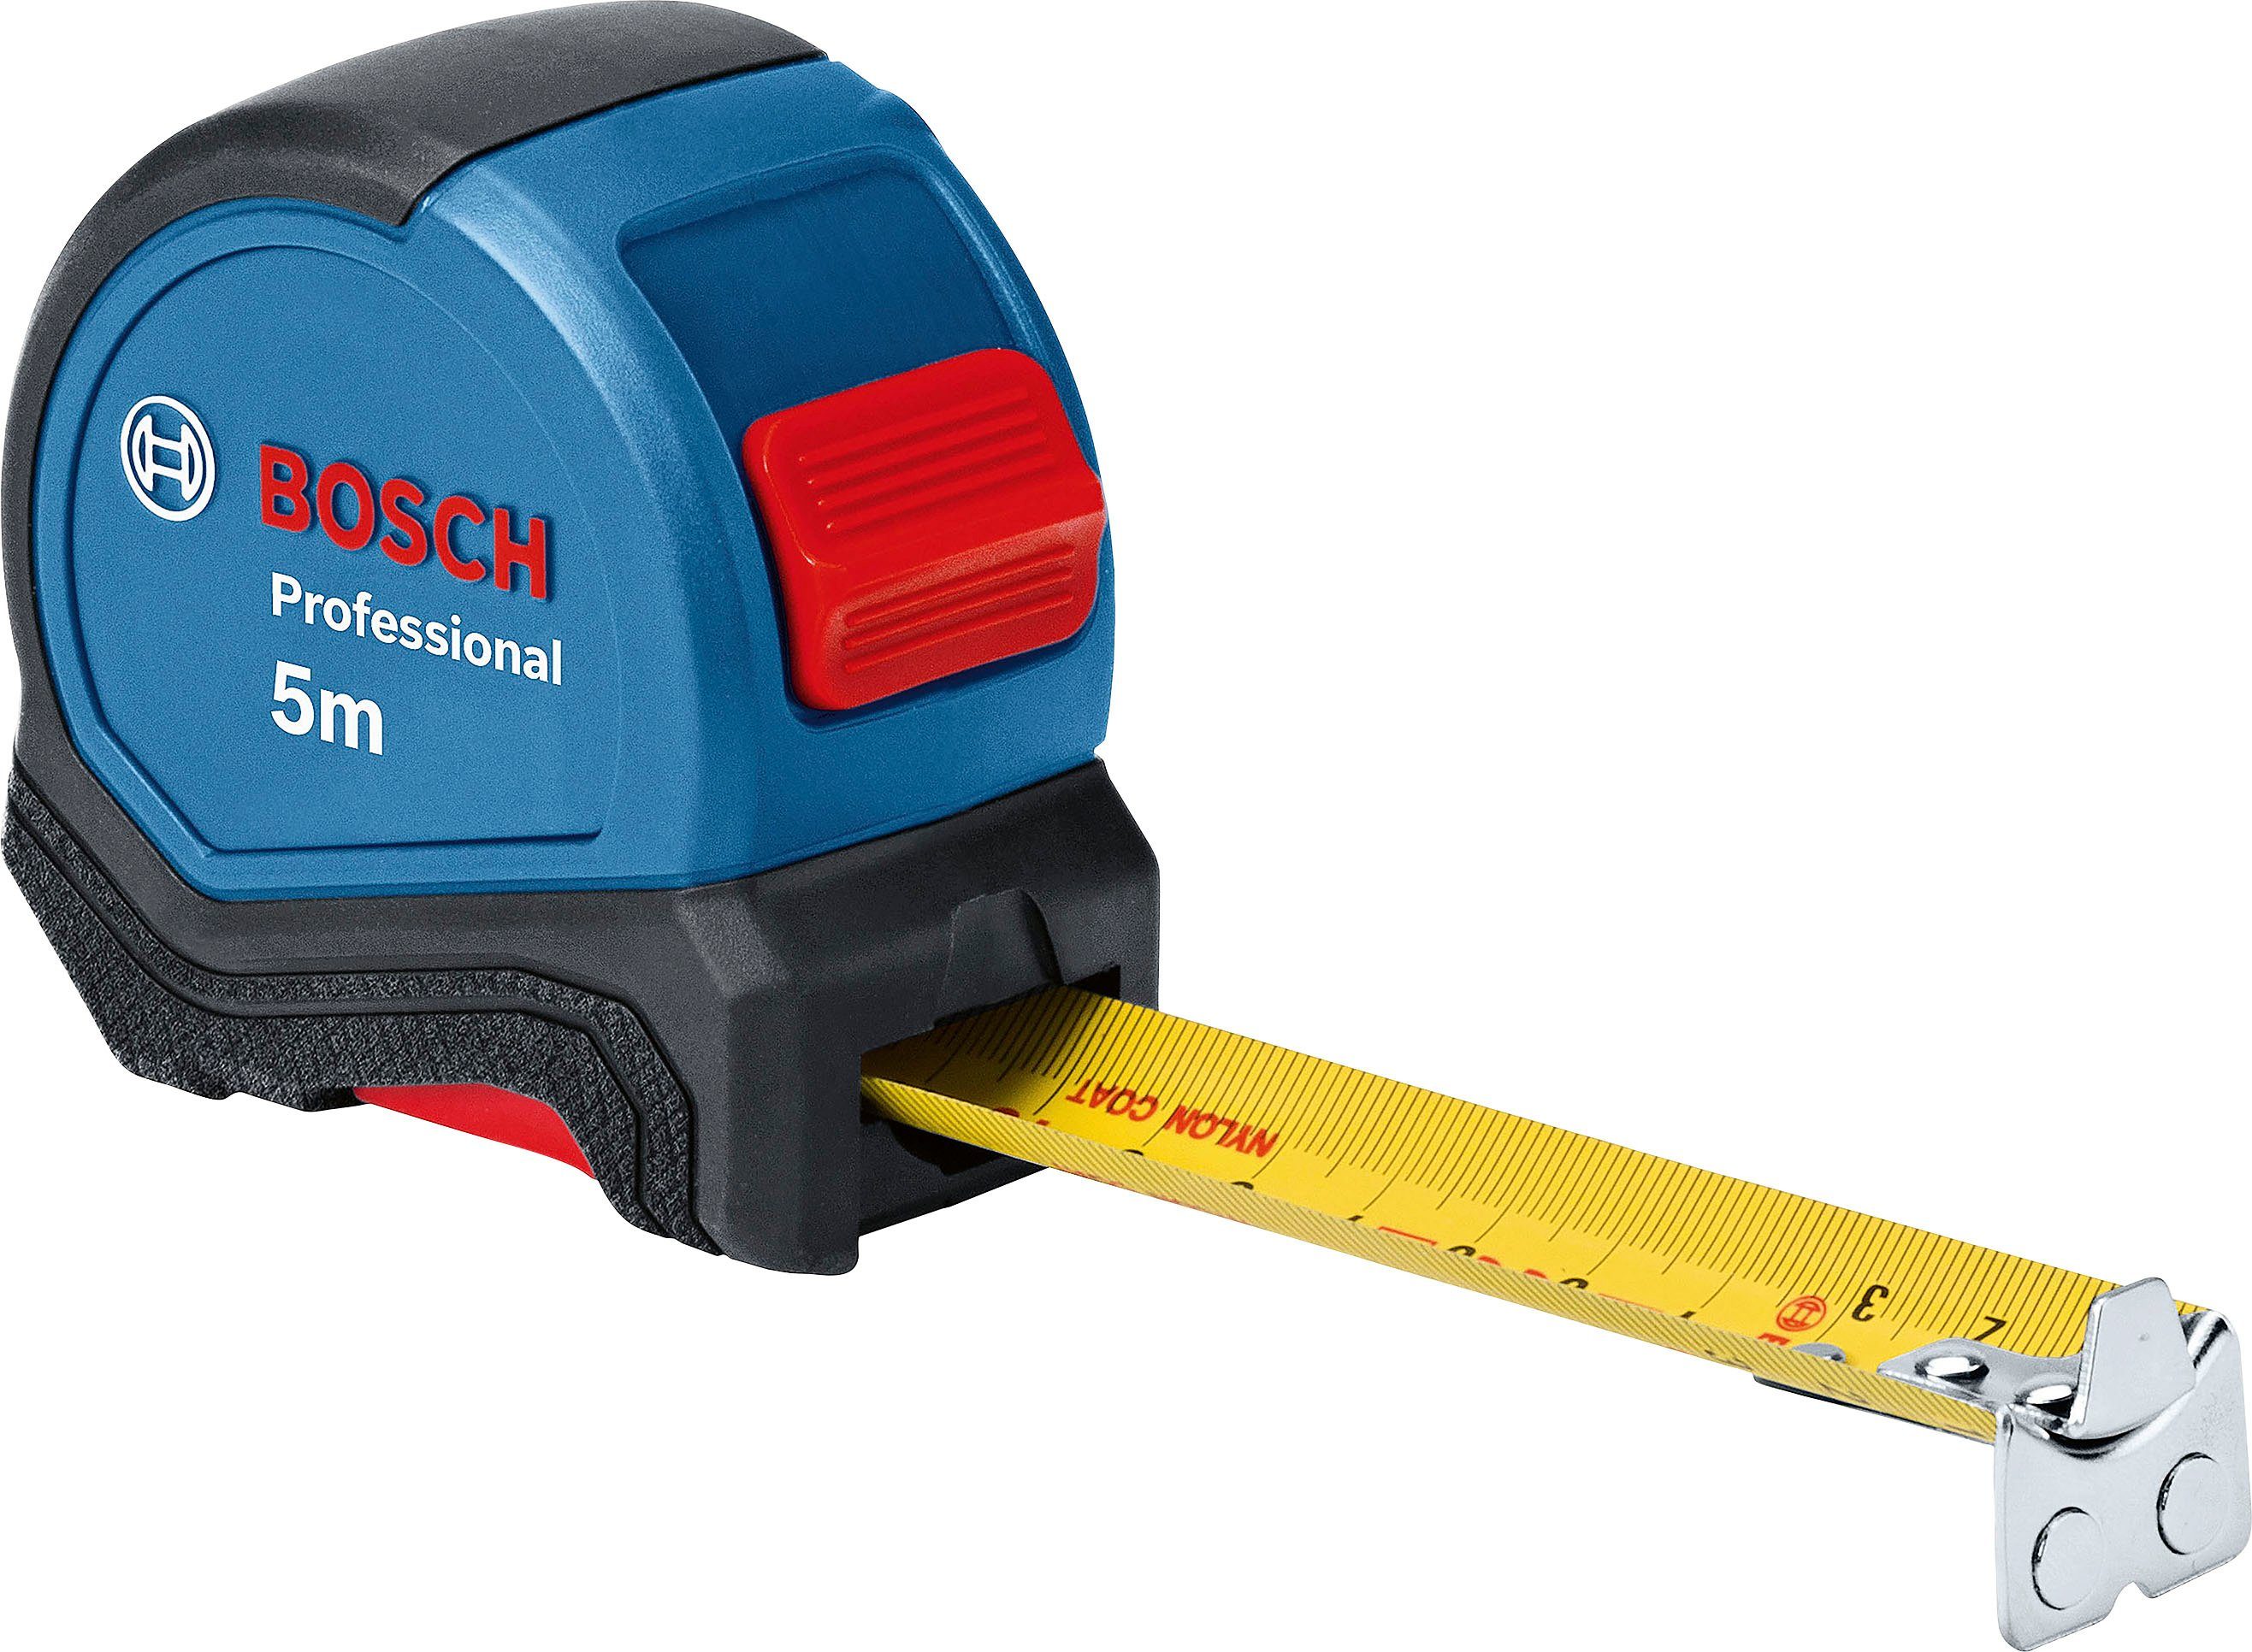 Bosch Professional Werkzeugset Maßband, und (1600A027M3), Ersatzklingen Wasserwaage, 13-tlg., Universalmesser